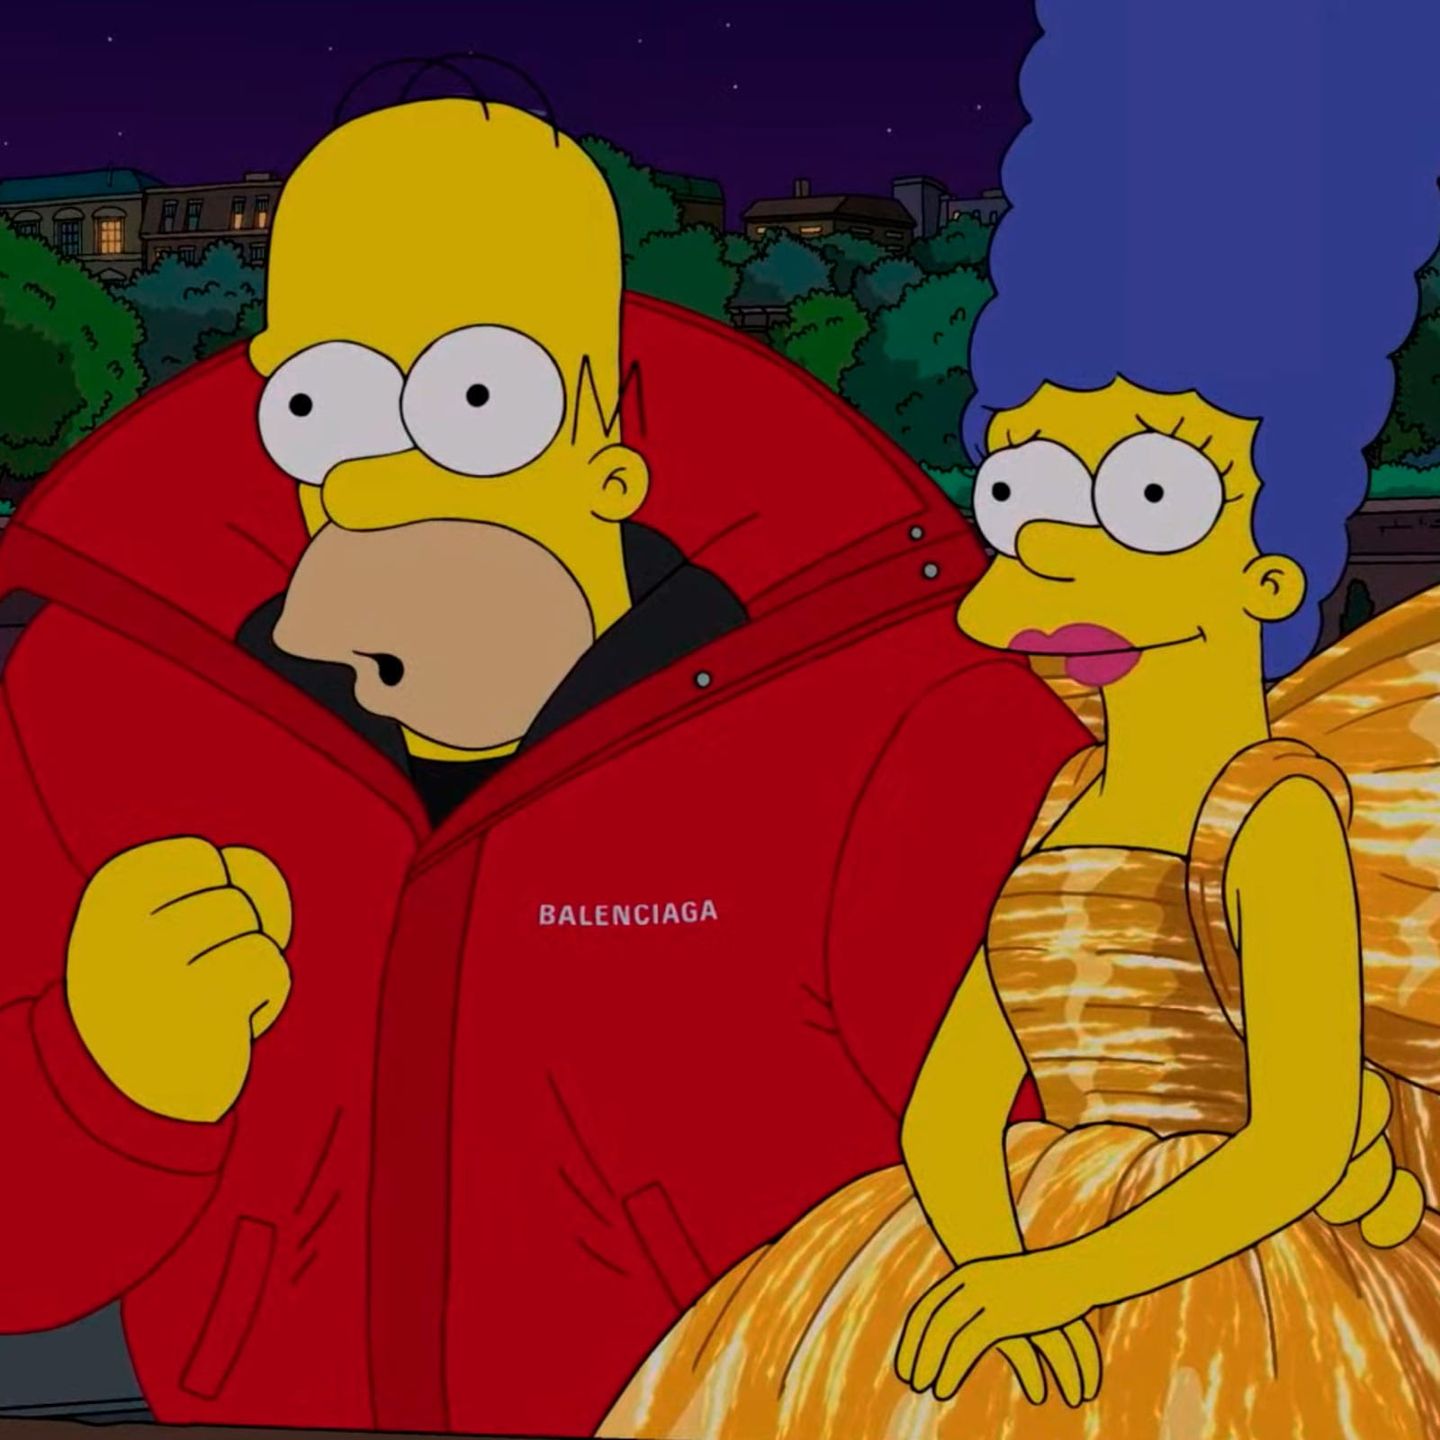 Новую коллекцию Balenciaga представили в спецэпизоде «Симпсонов»